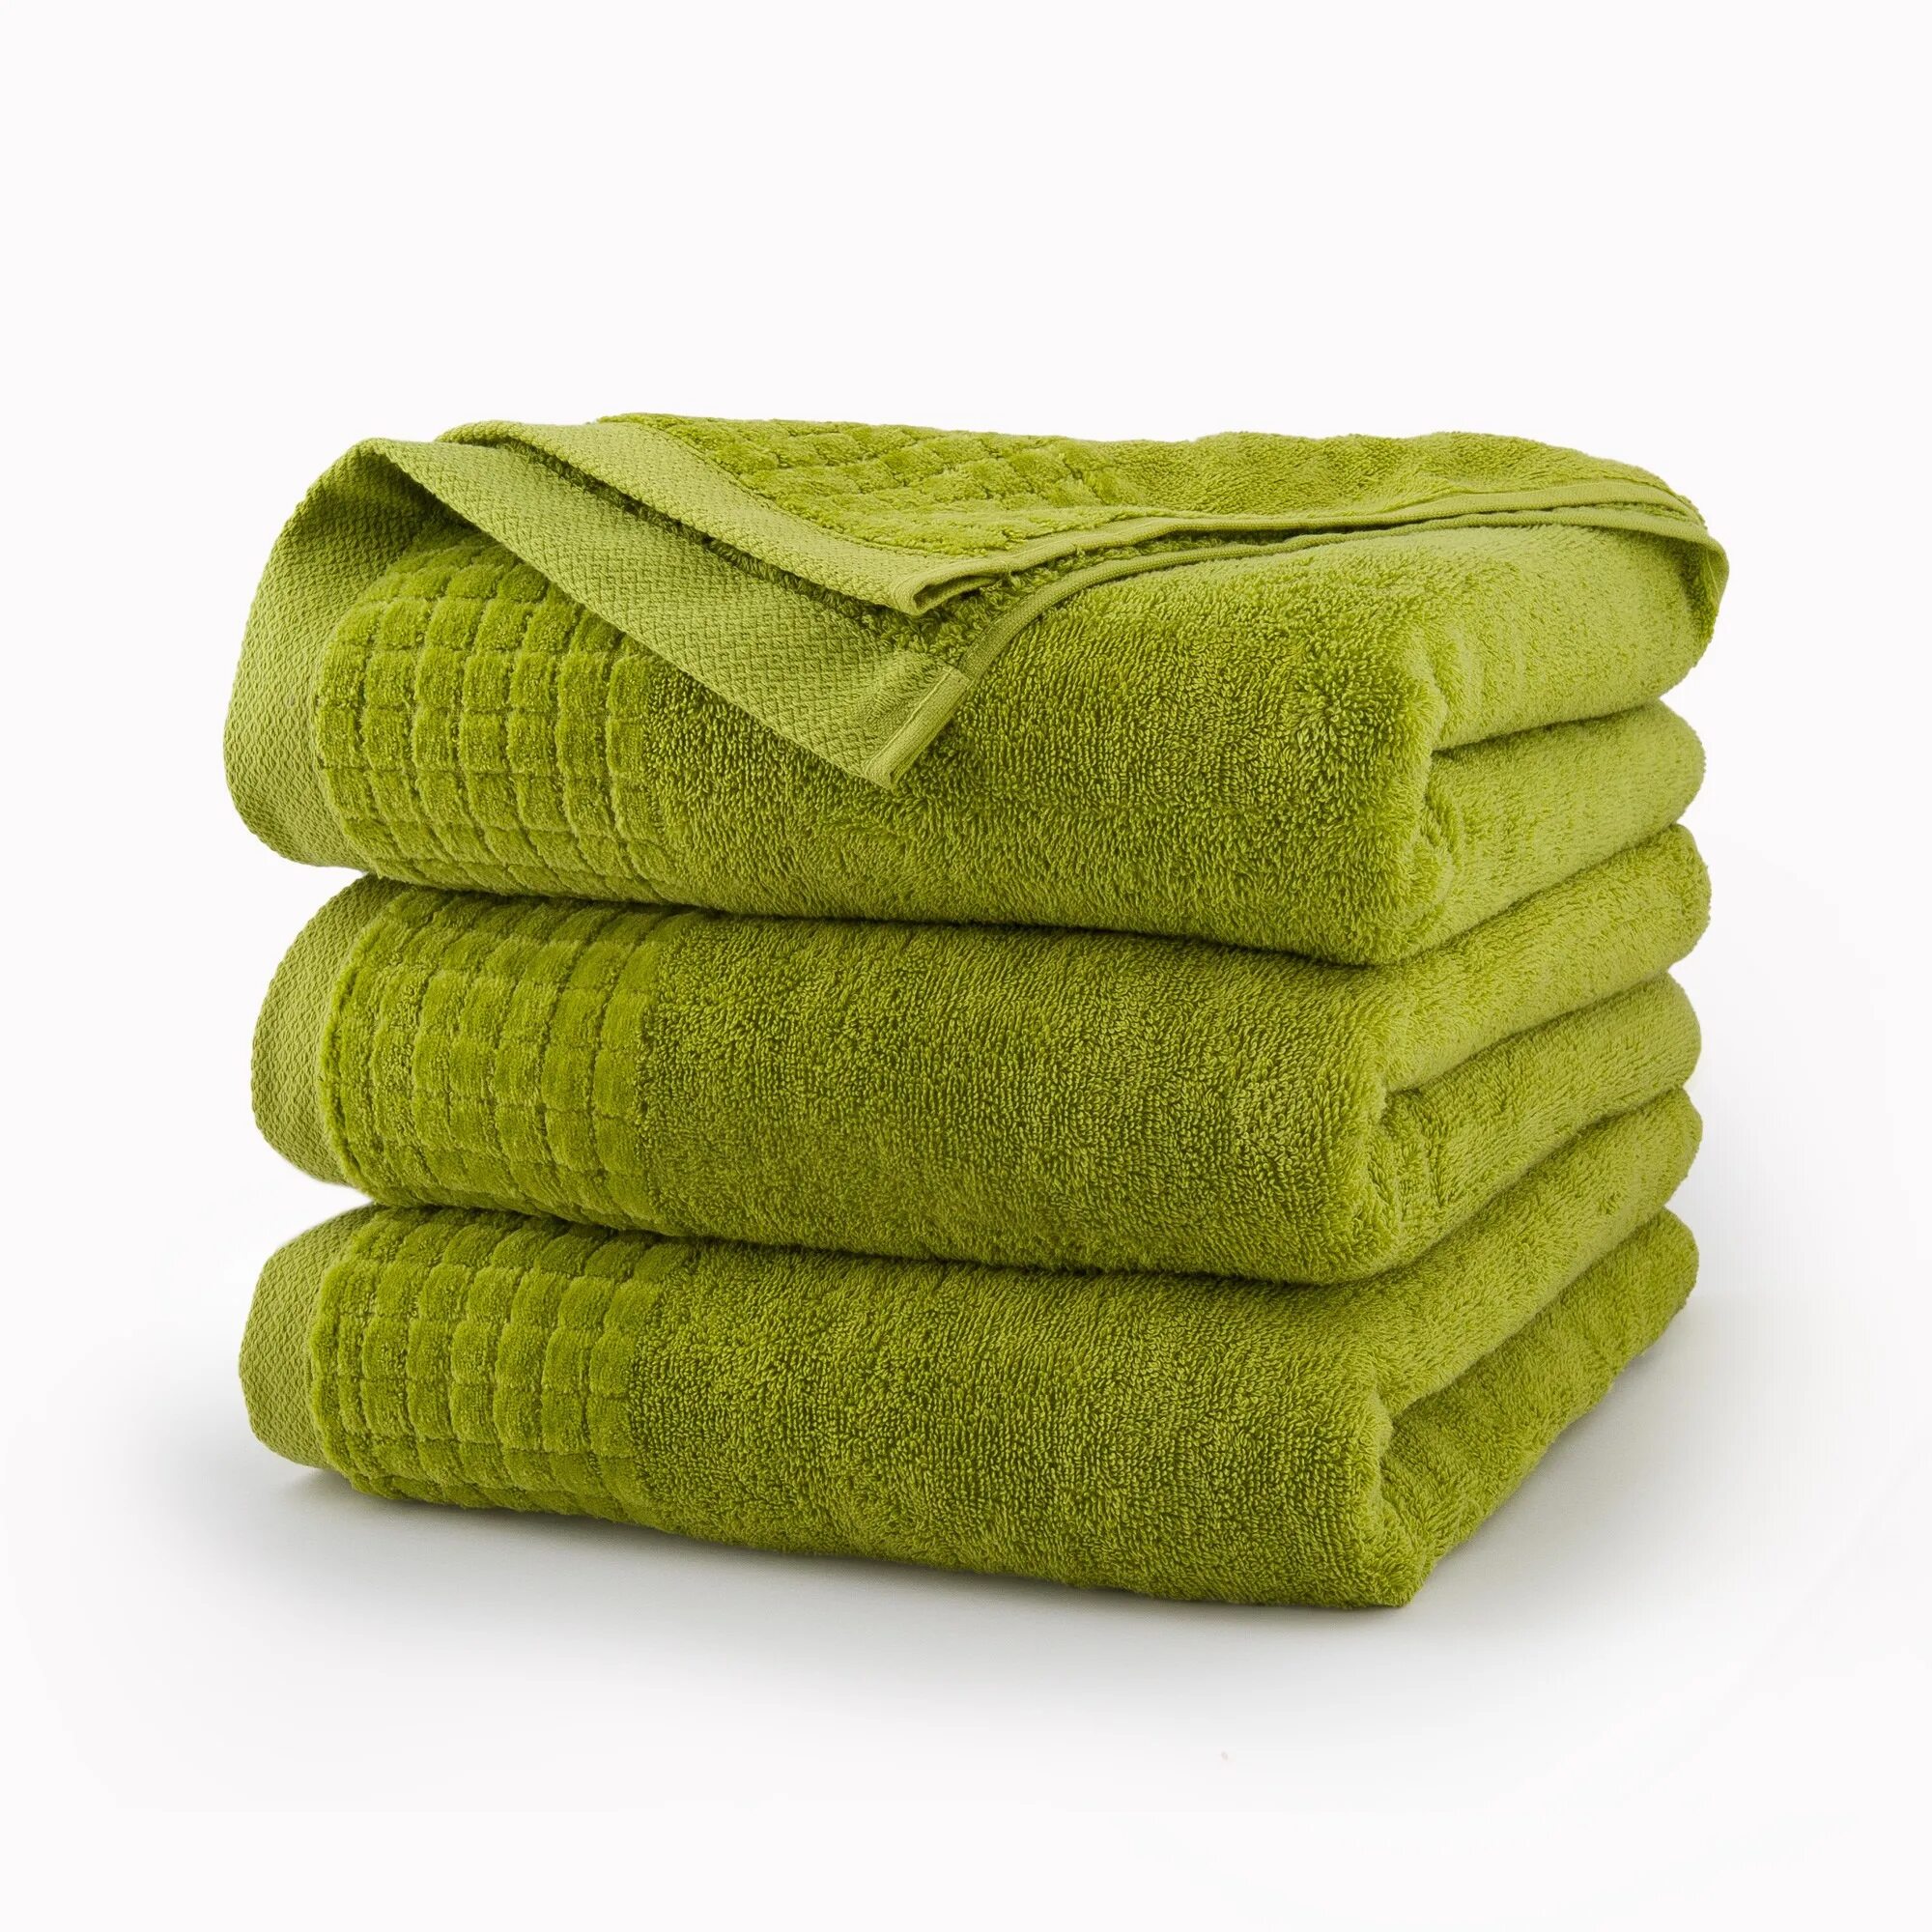 Полотенце корень. Салатовое полотенце. Зеленое полотенце. Полотенце махровое зеленый. Сложенные полотенца.